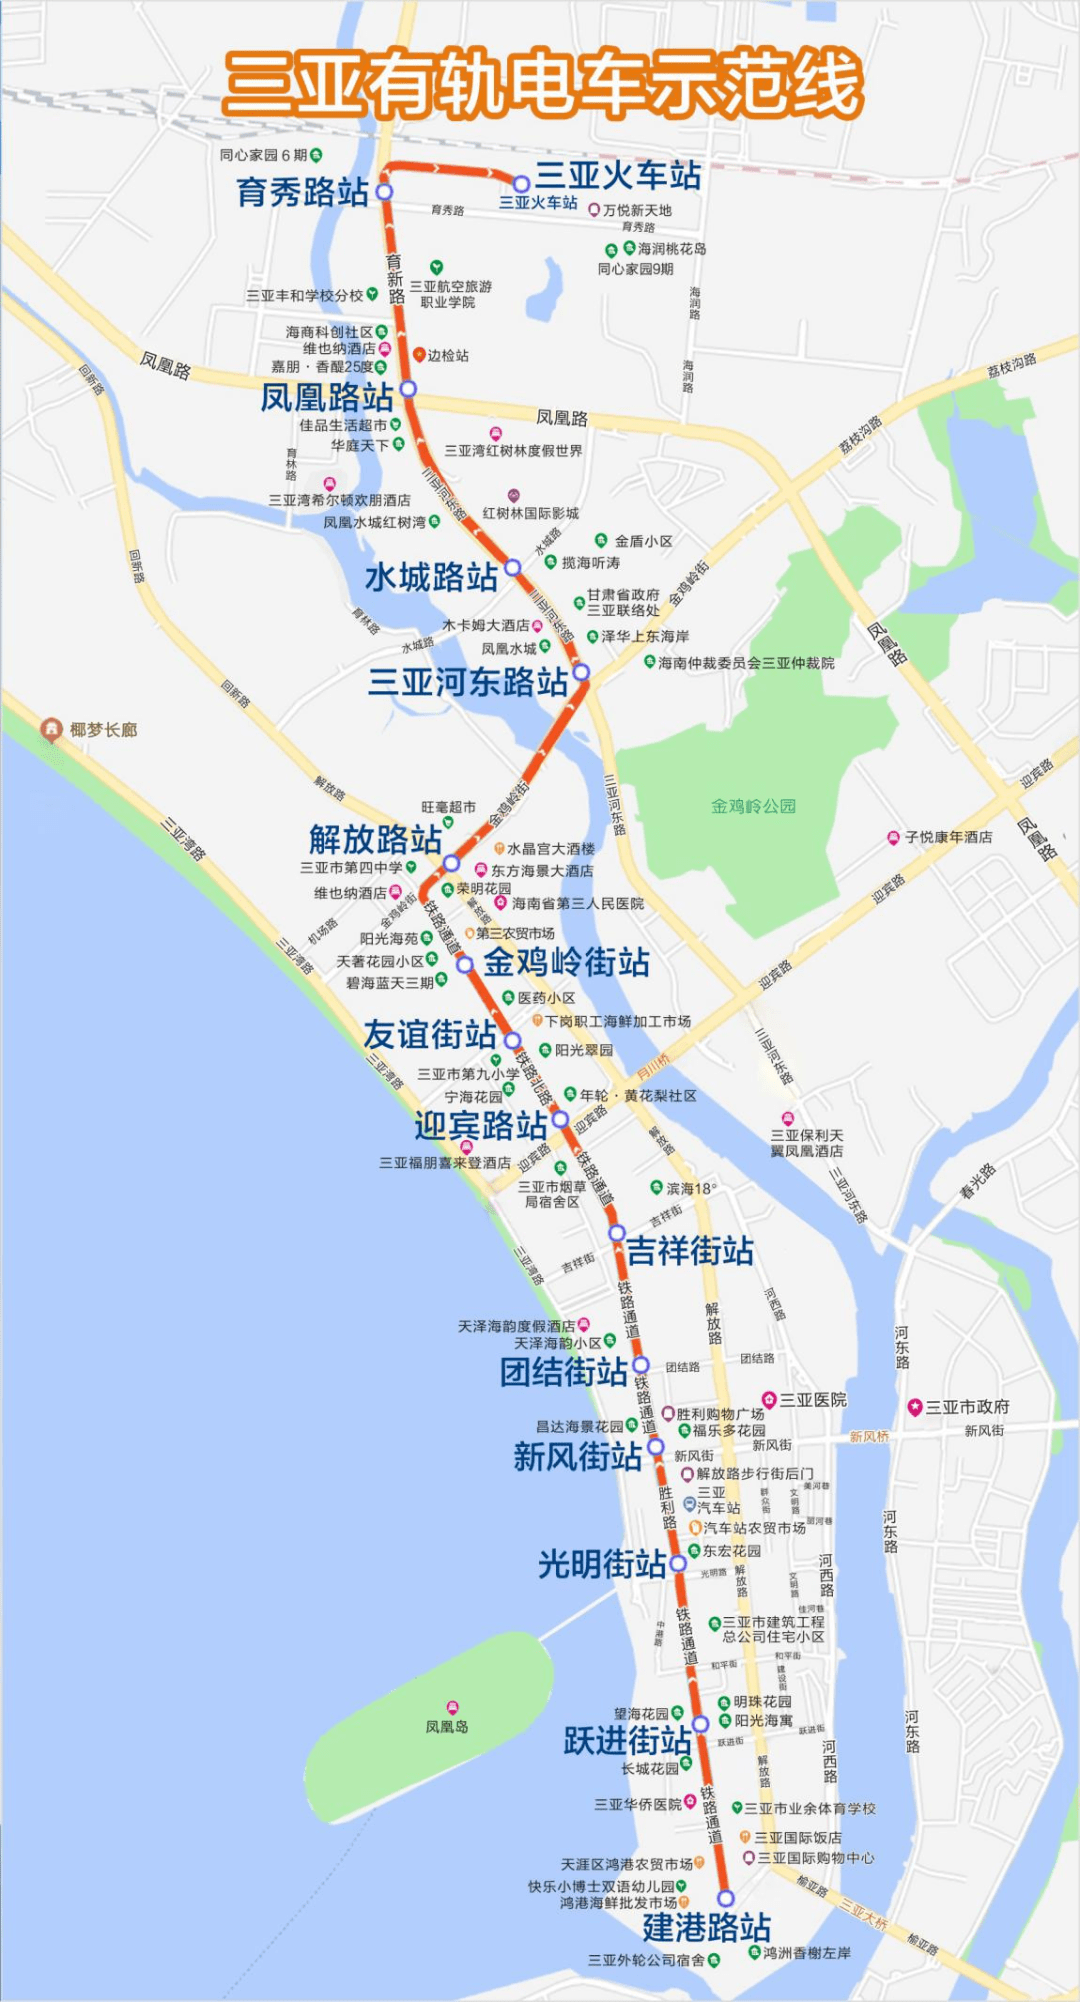 明日起海南省三亚有轨电车示范线调整列车运行图高峰时段平均间隔10